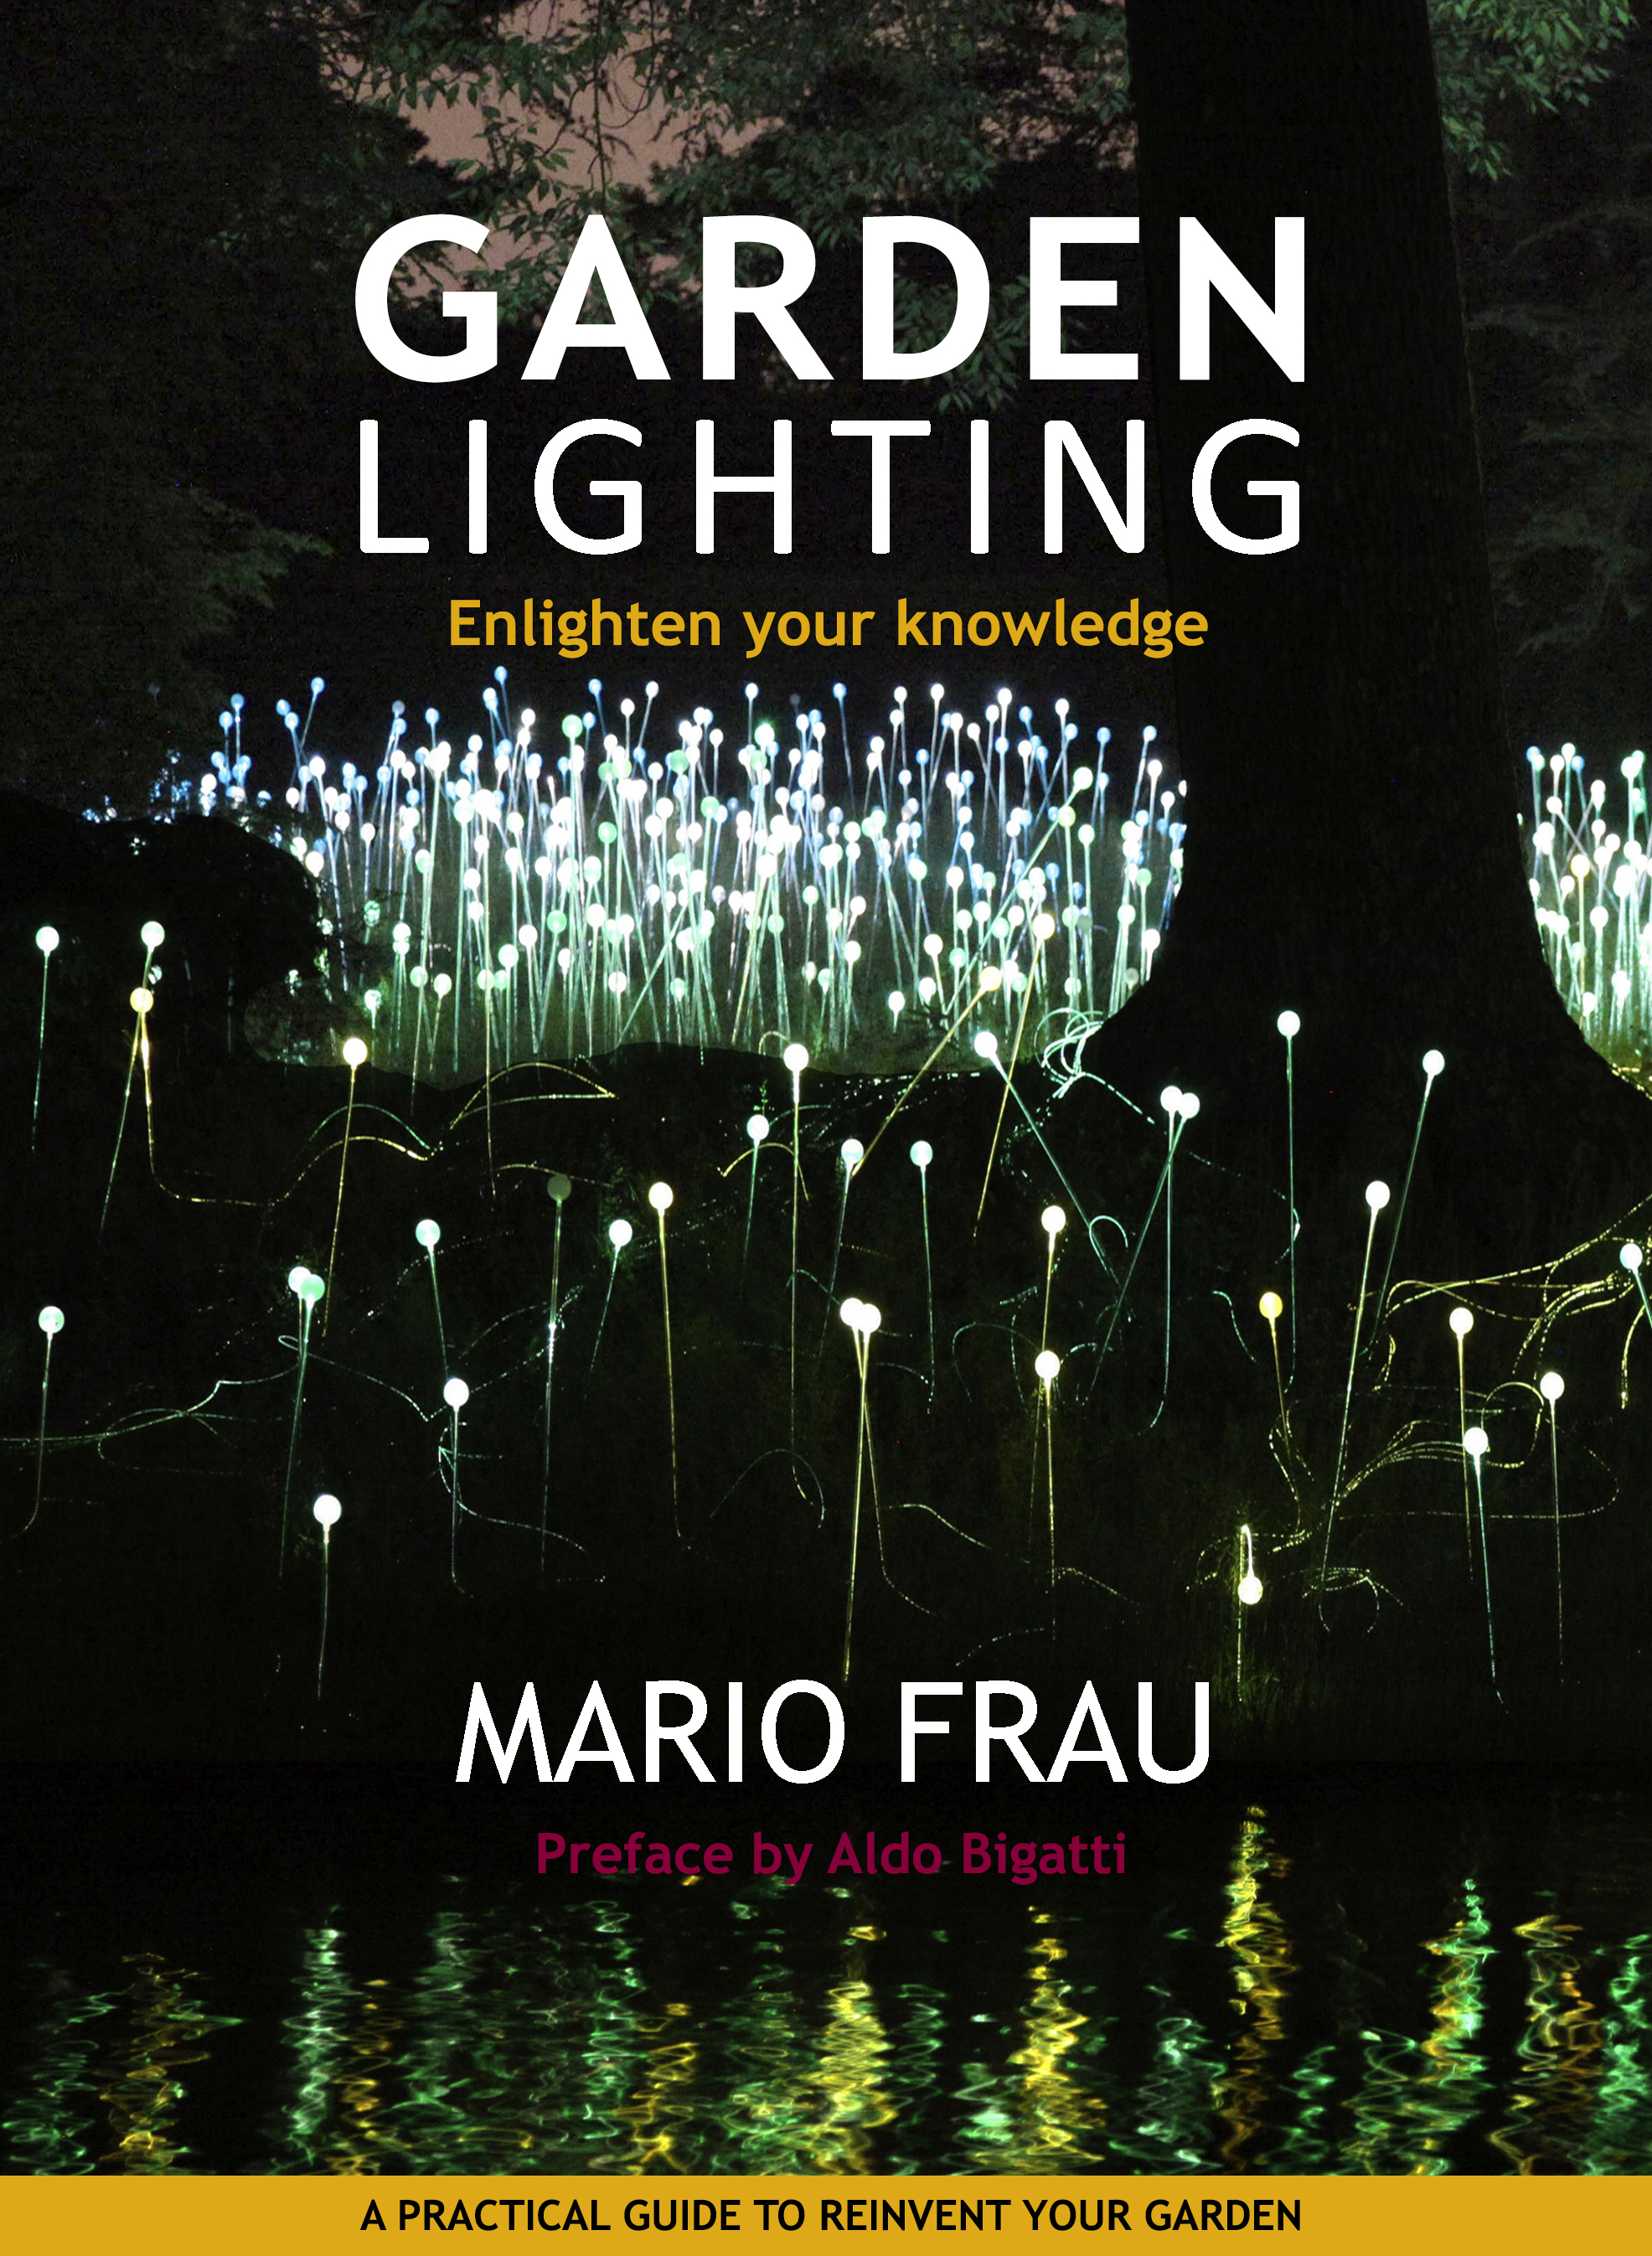 Enhance Your Garden with Mario Frau’s Garden Lighting Book